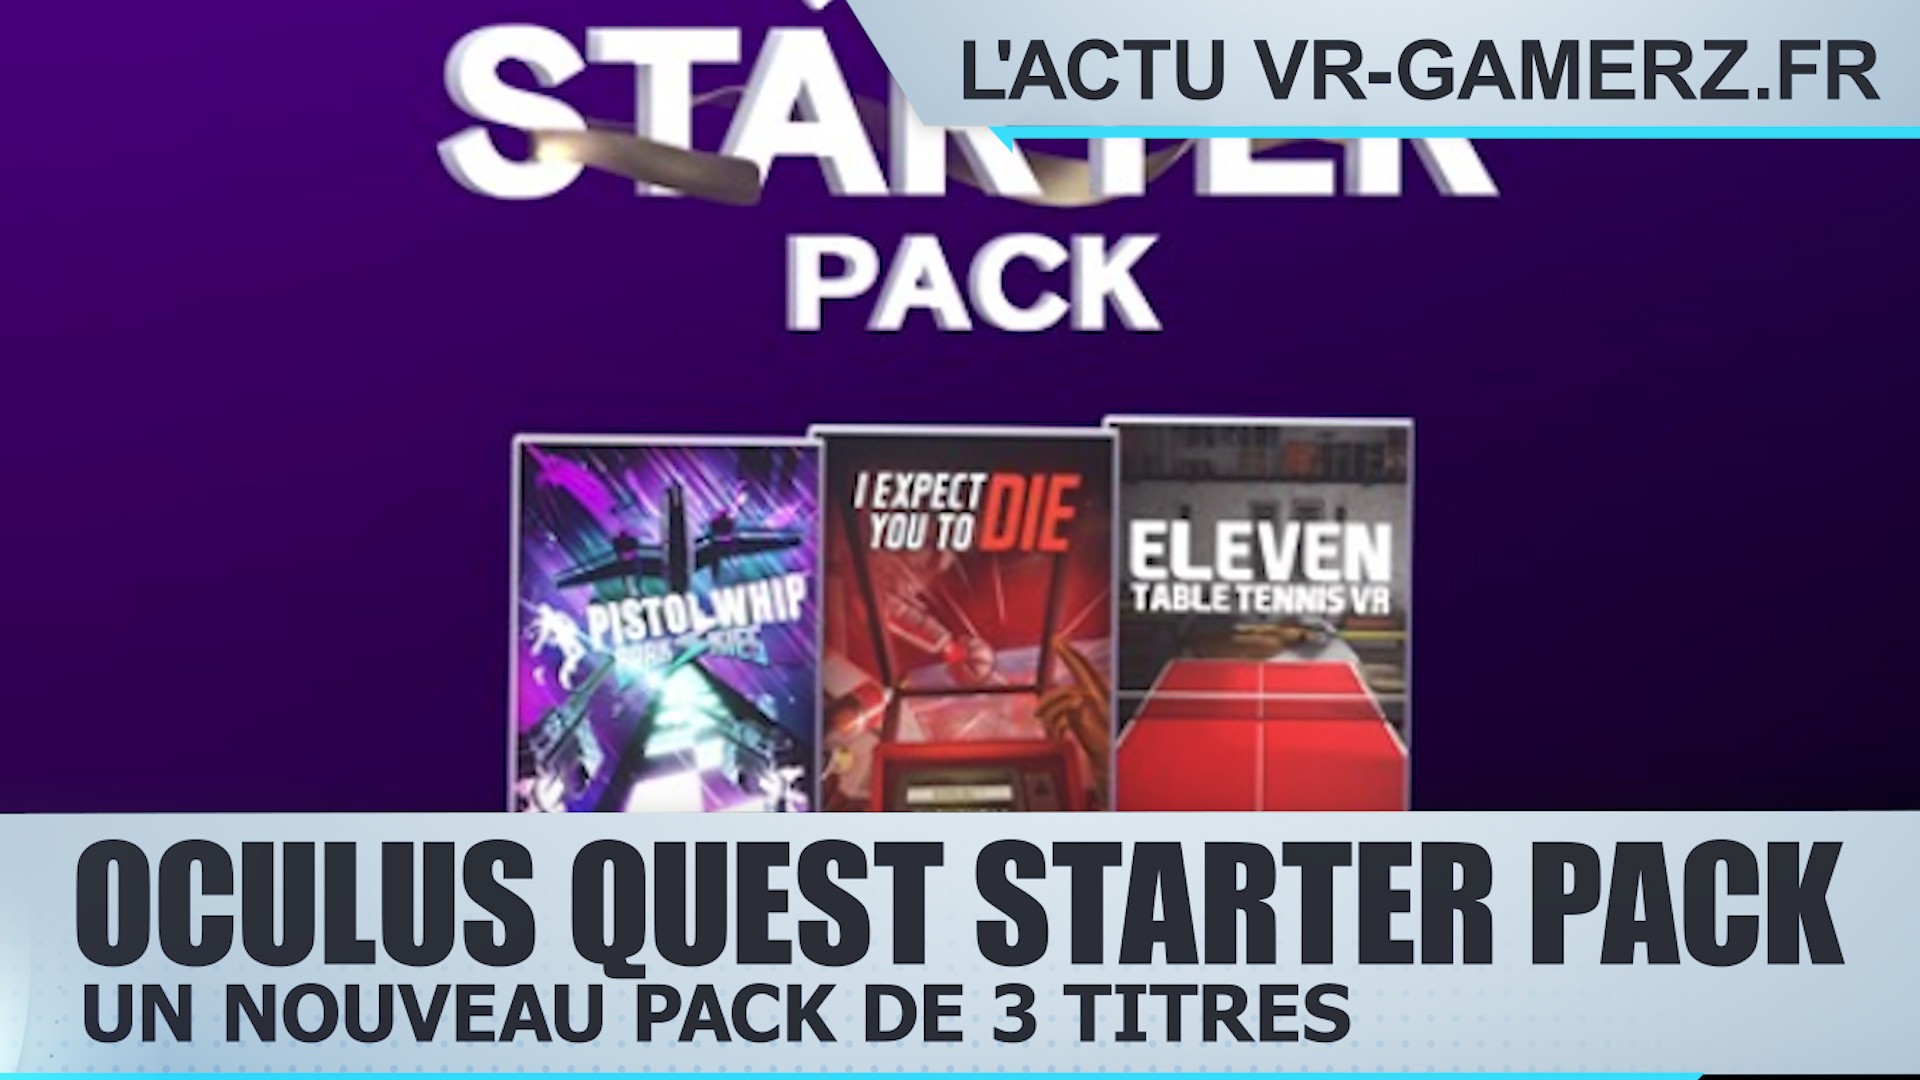 Encore une offre pour l’anniversaire de l’Oculus quest : le Quest Starter Pack